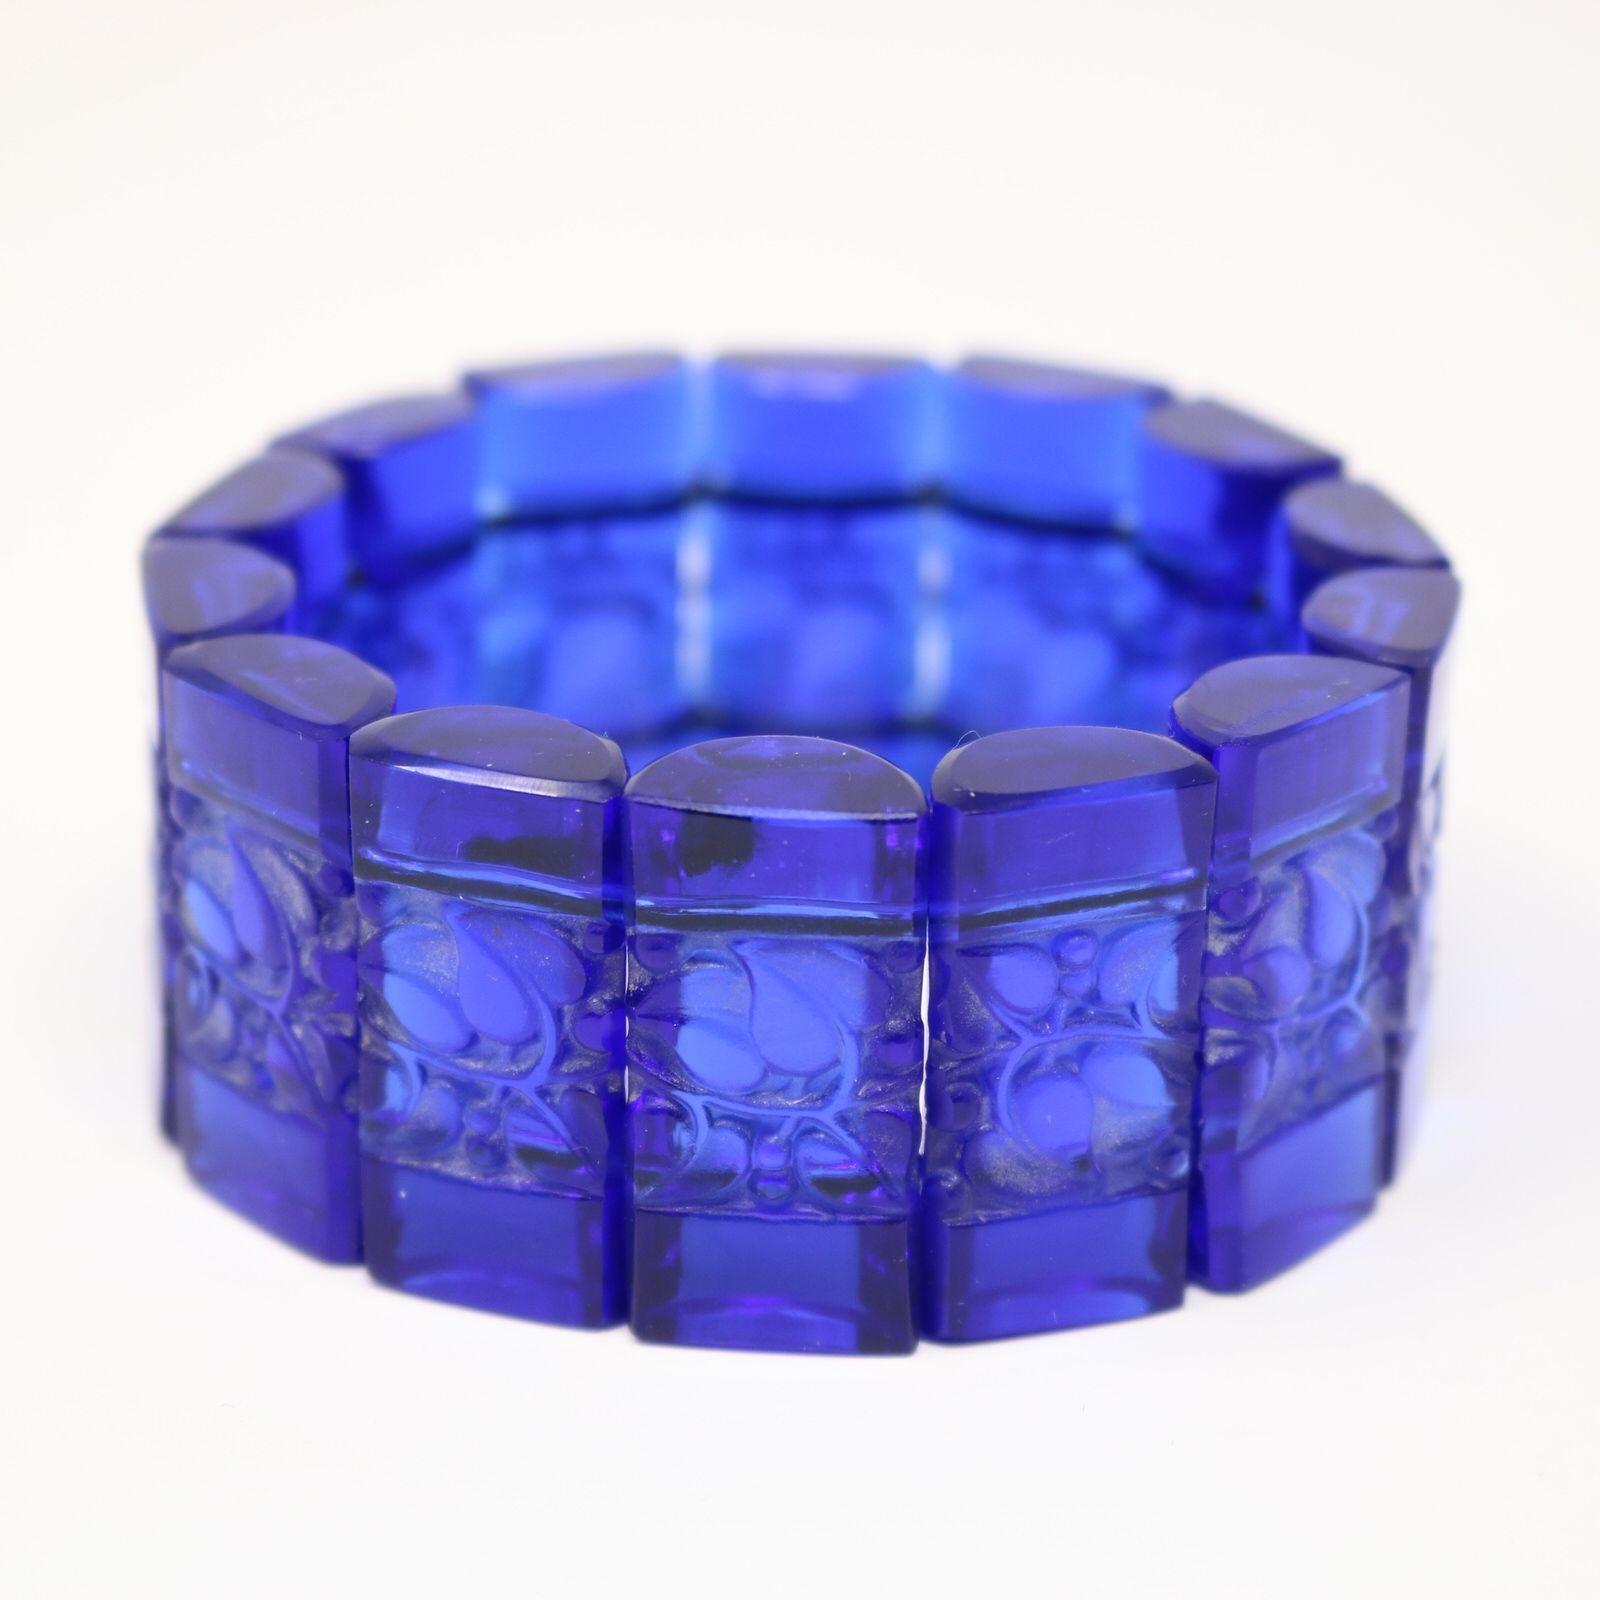 Bracelet 'Ceriser' de René Lalique en verre bleu. Le bracelet se compose de 14 pastilles rectangulaires, en forme de demi-cylindre, reliées entre elles par un élastique. Chaque tablette est décorée de feuilles et de baies moulées. Marque de fabrique